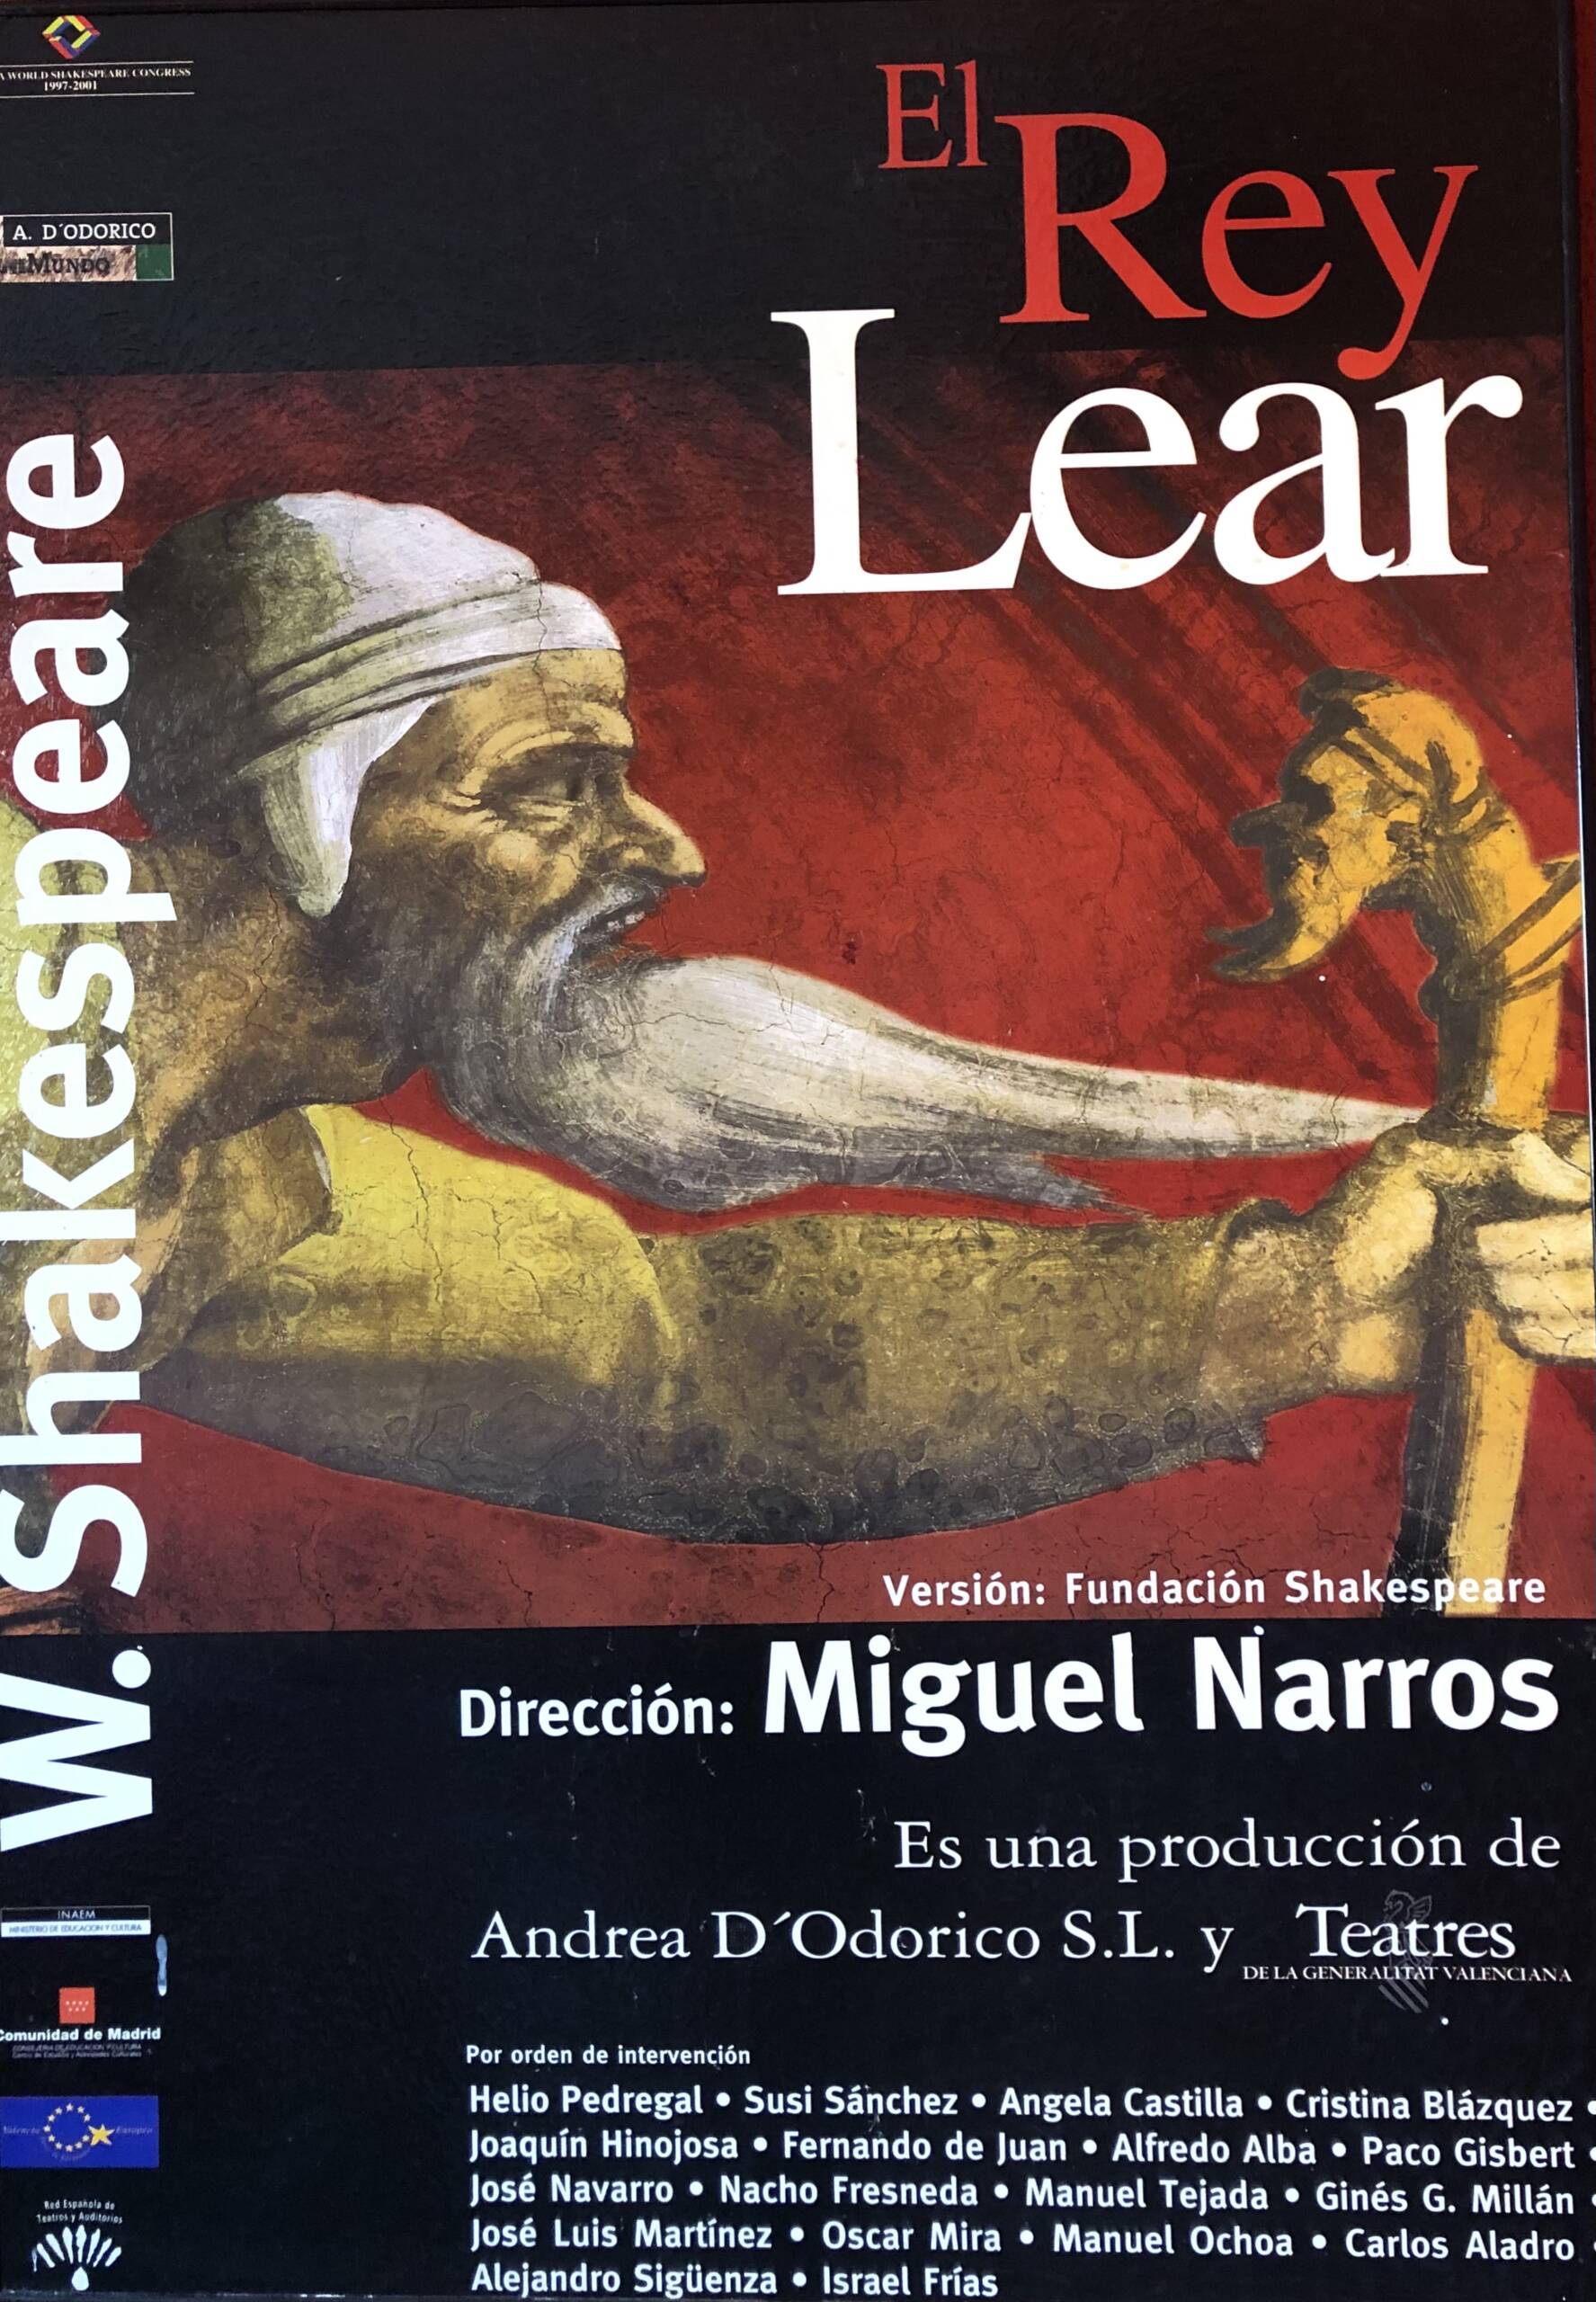 El rey Lear de Shakespeare<br>Direc. Miguel Narros